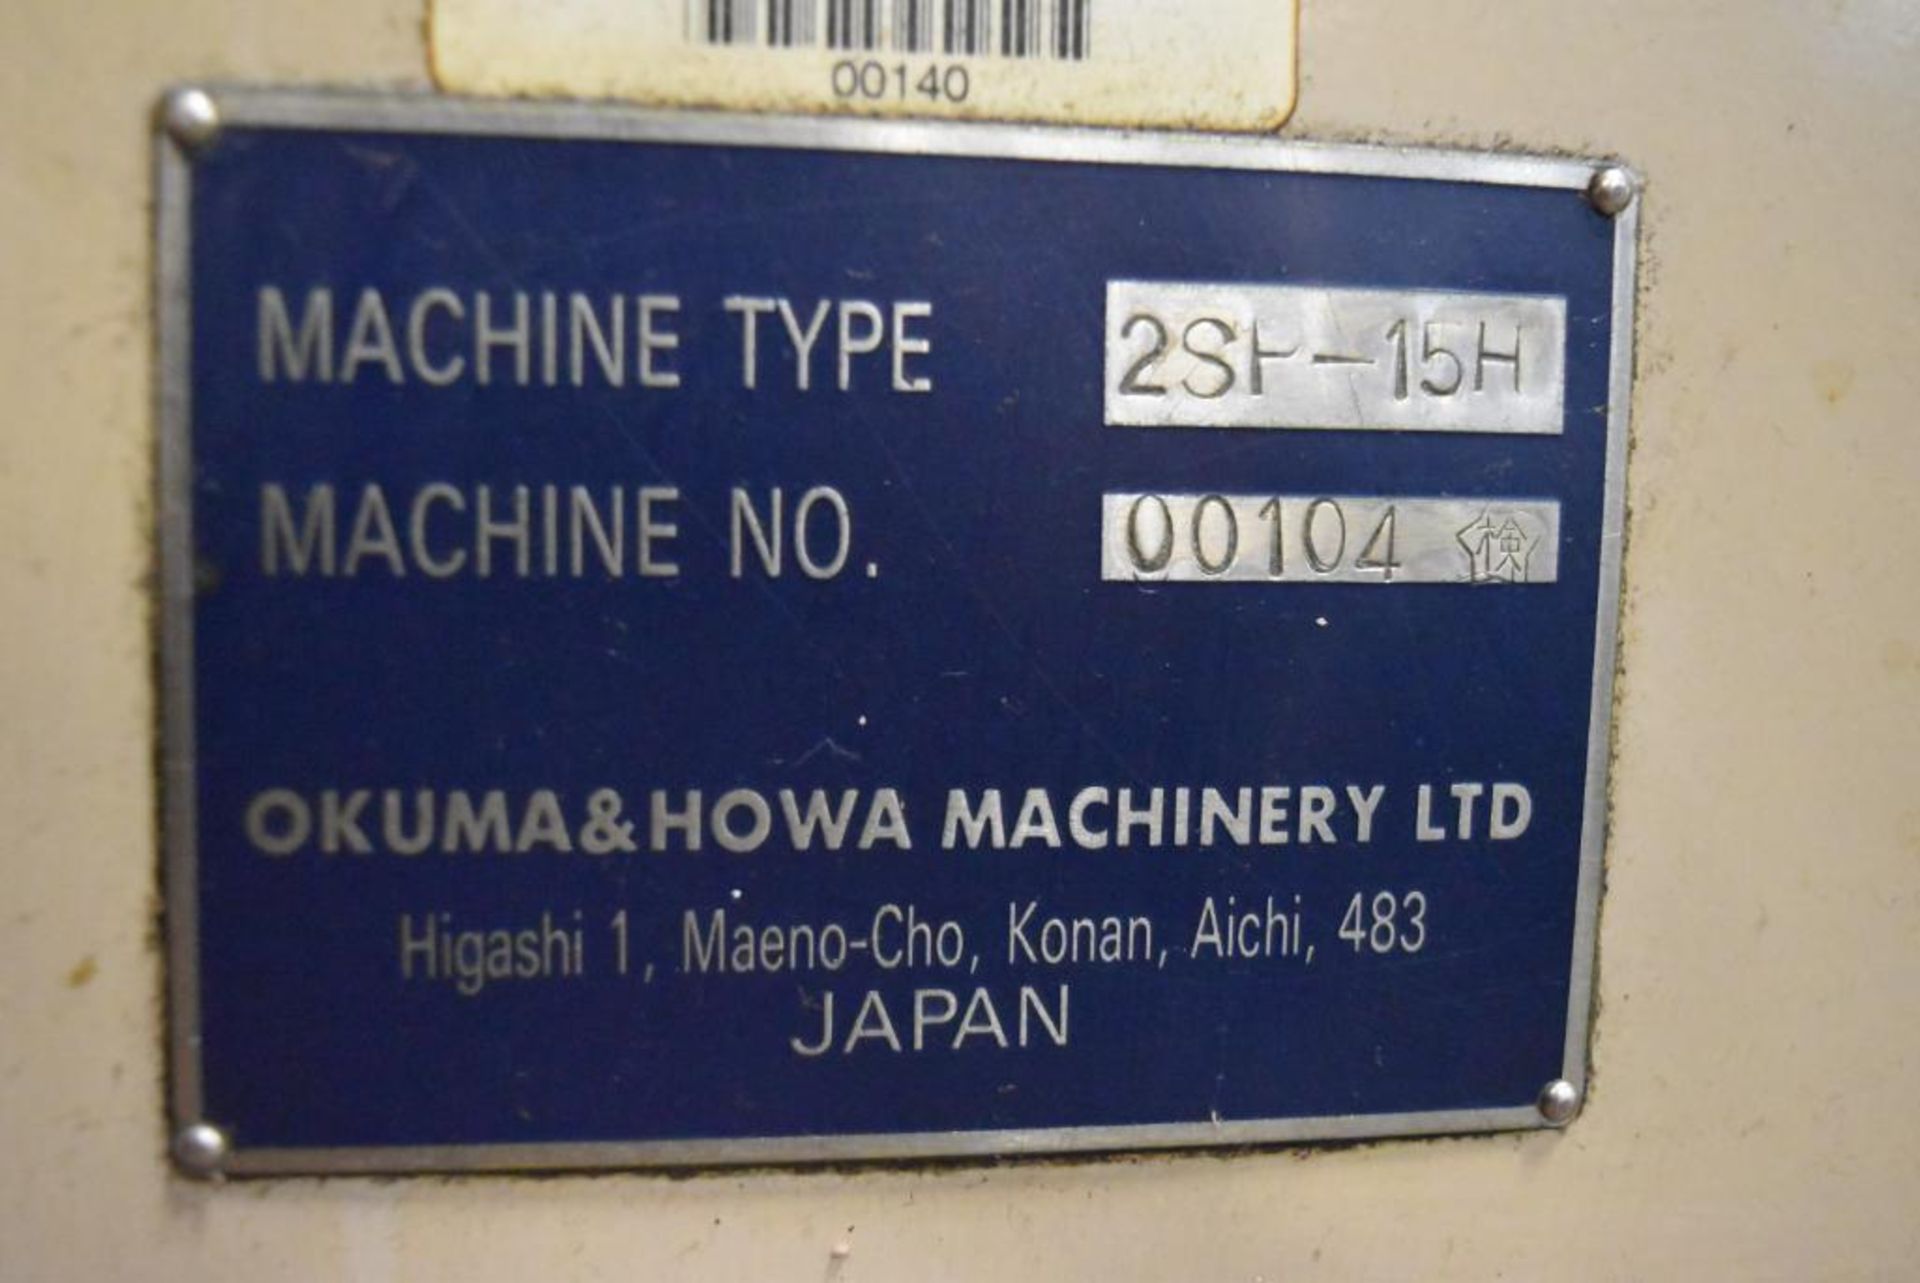 Okuma & Howa Model 2SP-15H CNC Dual Spindle Horizontal Machining Center/Lathe - Image 7 of 7